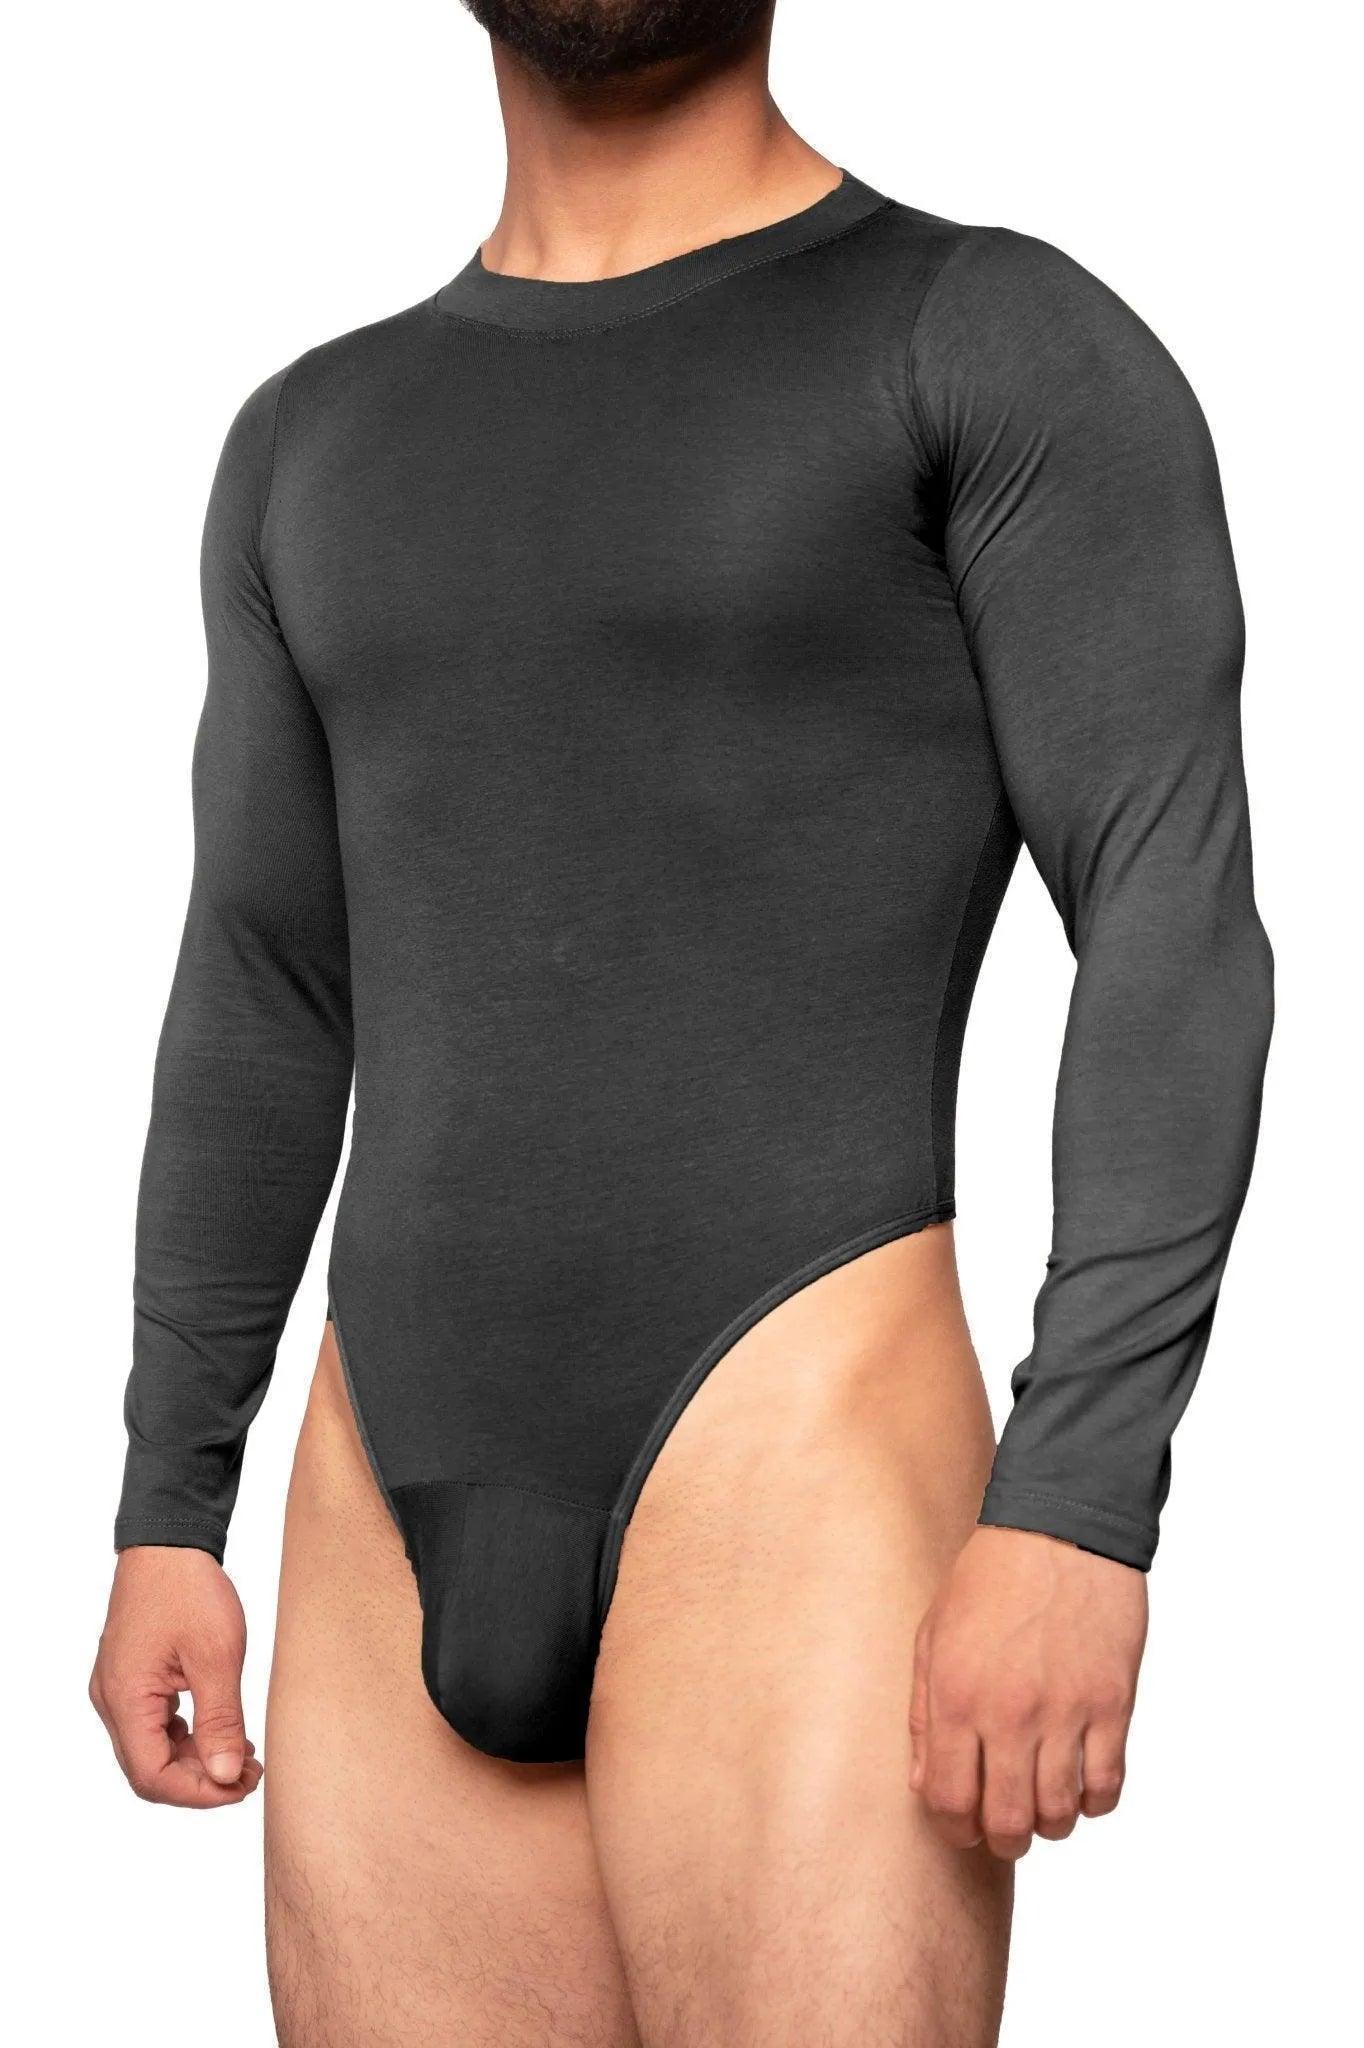 Surfer Bodysuit - Black - Erobold - 